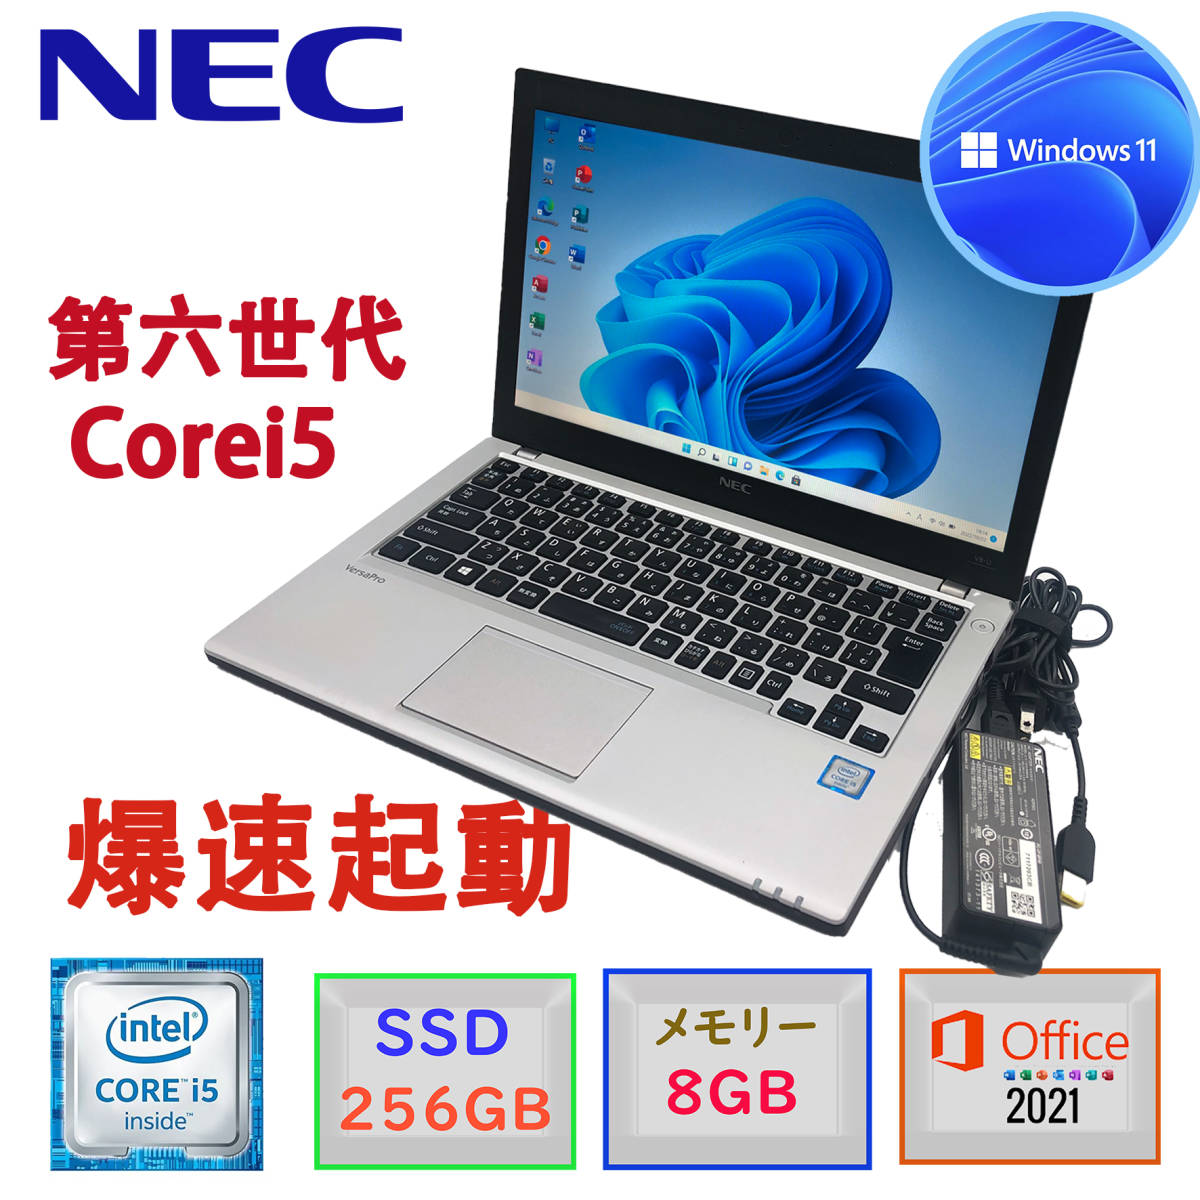  б/у прекрасный товар no. 6 поколение Corei5 NEC Versapro VB-U Windows11 MSoffice2021 большая вместимость память 8GB. скорость SSD256GB HDMI Bluetooth беспроводной LAN USB3.0 F